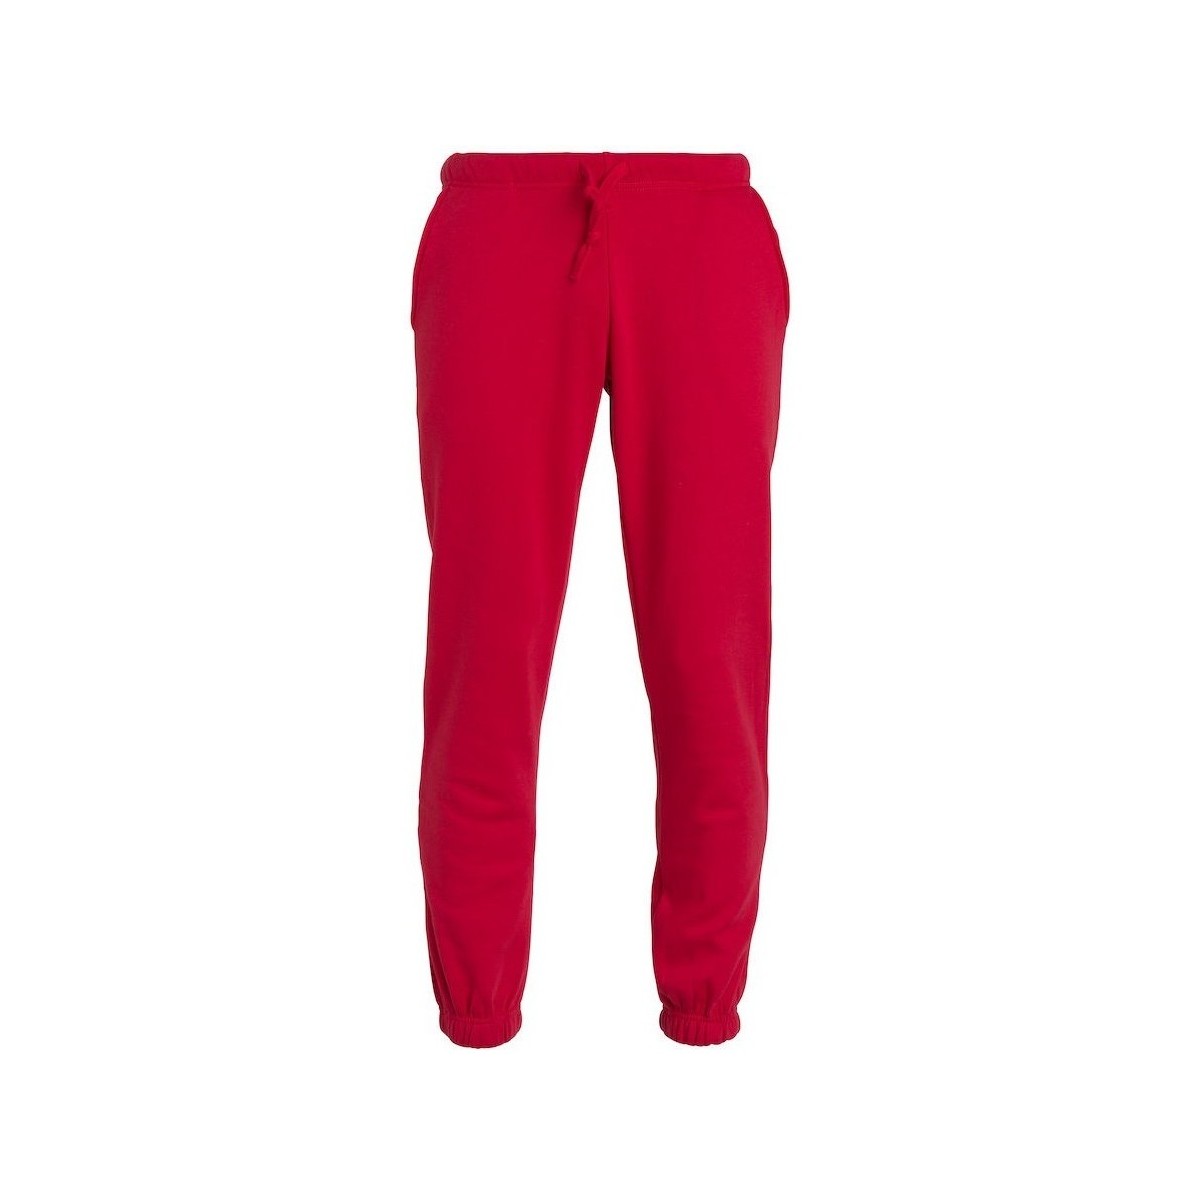 Vêtements Enfant Pantalons de survêtement C-Clique UB188 Rouge